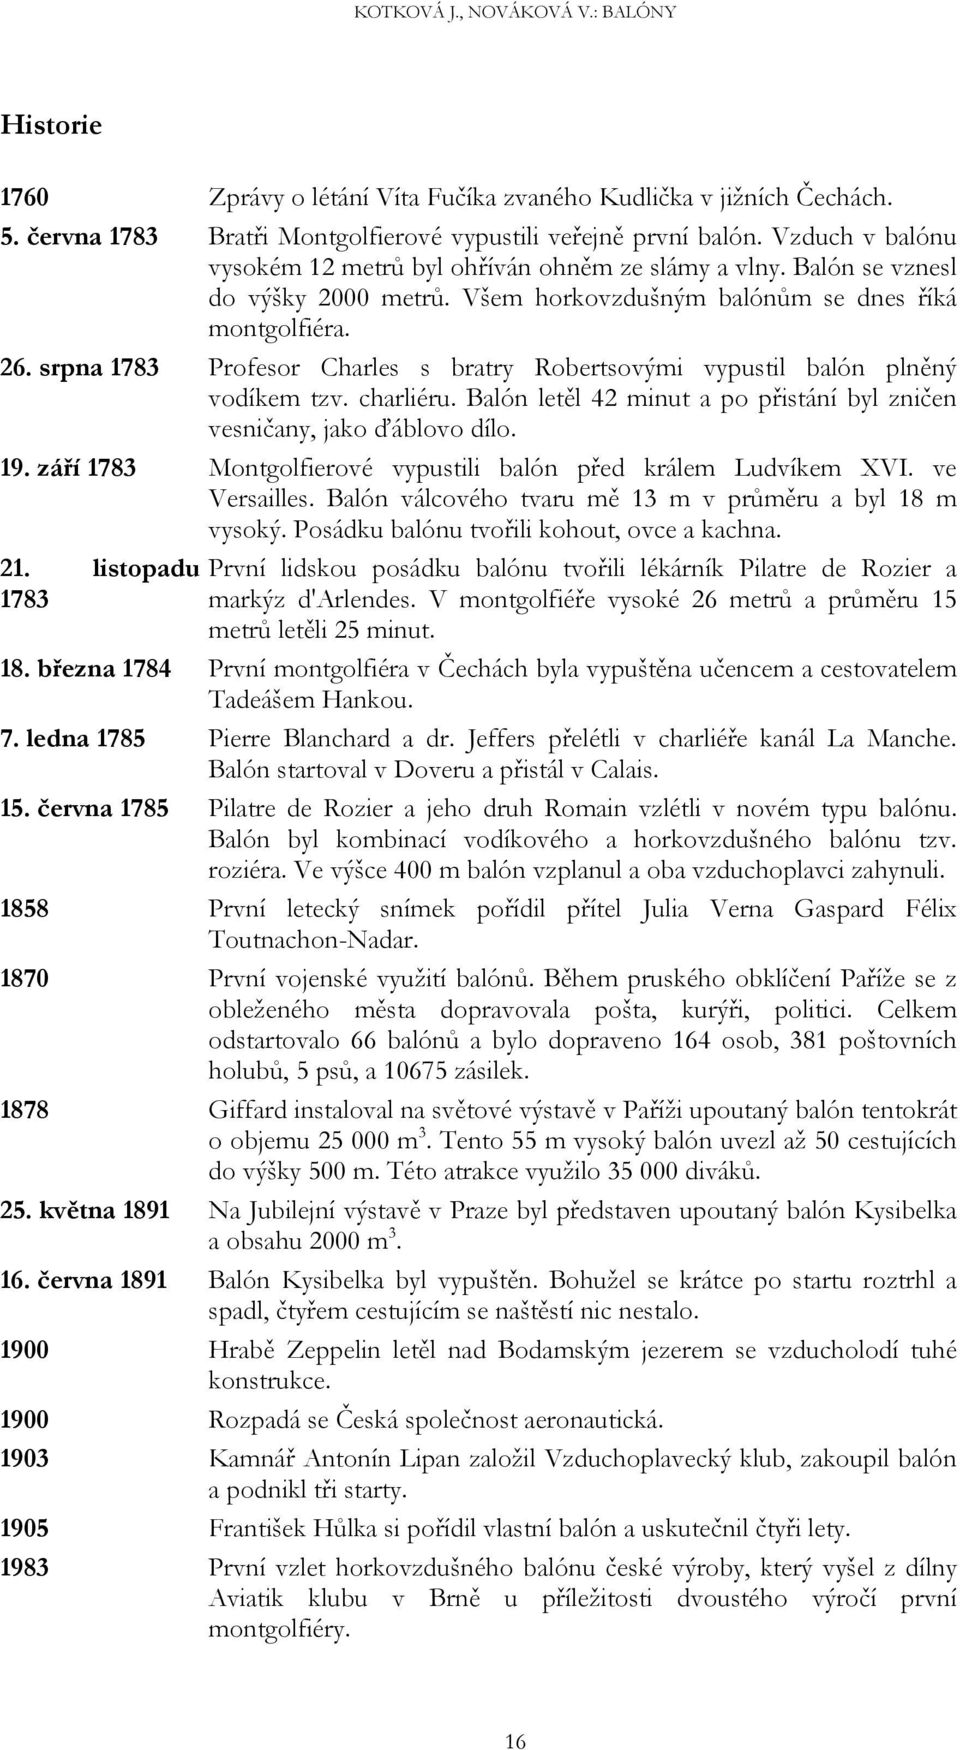 KOTKOVÁ J., NOVÁKOVÁ V.: BALÓNY. Jana Kotková,Veronika Nováková 4. D,  Gymnázium Na Vítězné pláni 1160, , Praha 4, šk. - PDF Stažení zdarma